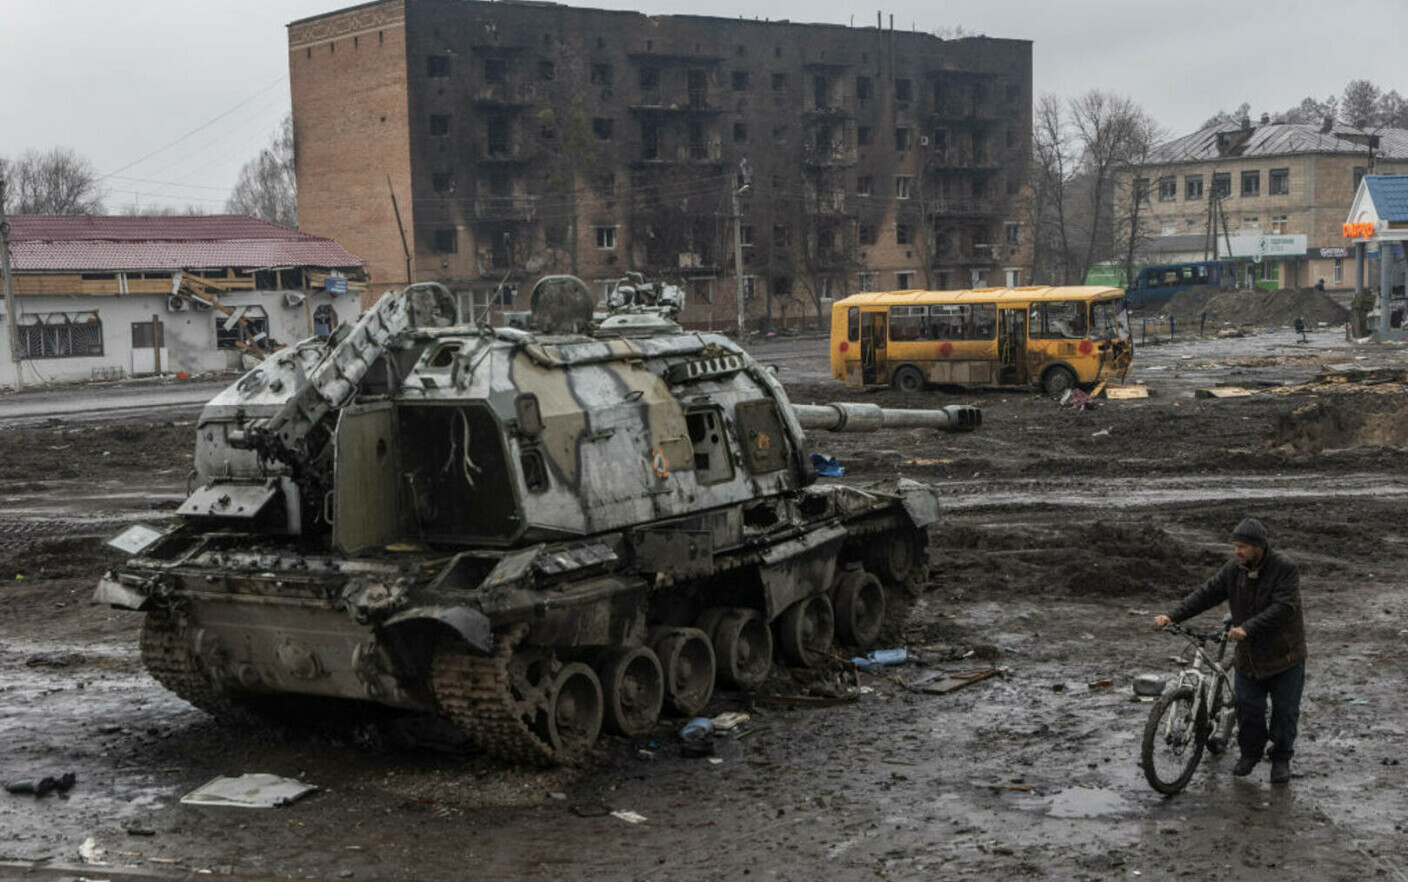 LIVE UPDATE Război în Ucraina, ziua 64. ”Urmează săptămâni extrem de dificile”, spun ucrainenii, Putin face amenințări